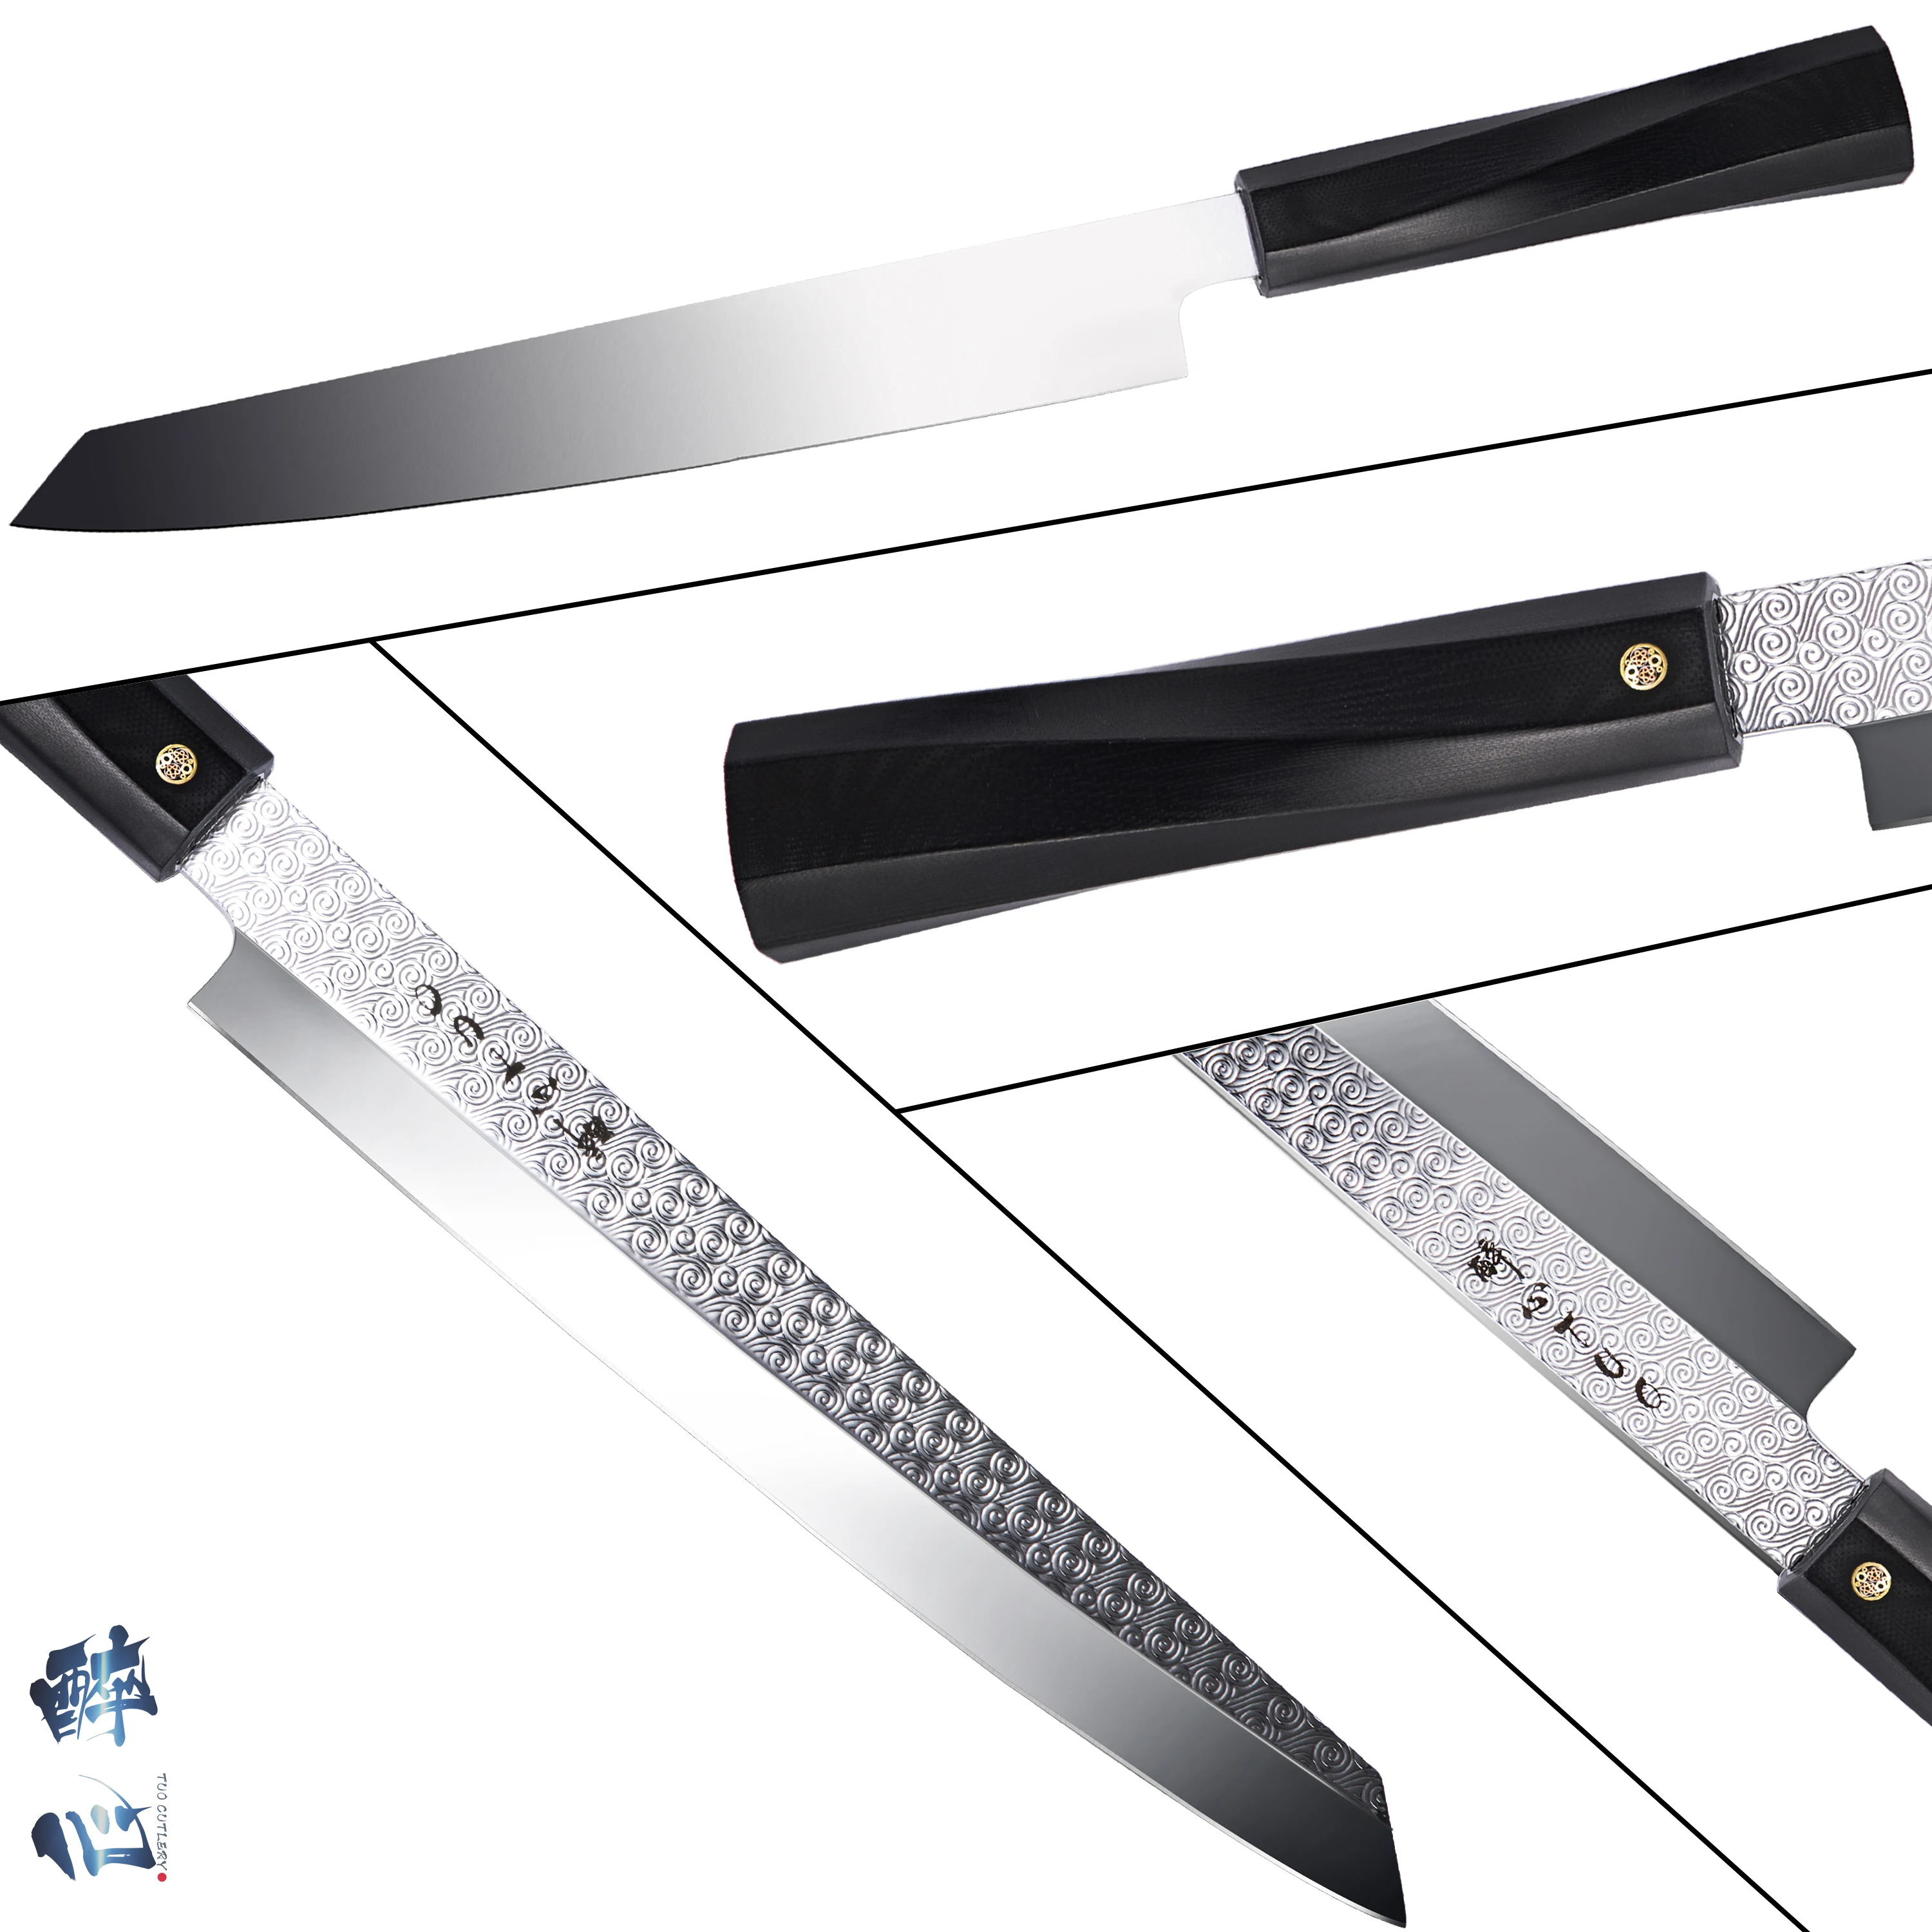 TUO Sashimi суши нож янагиба-японский кухонный нож 8,2" с AUS-8 из нержавеющей стали супер острое лезвие-нож для нарезки